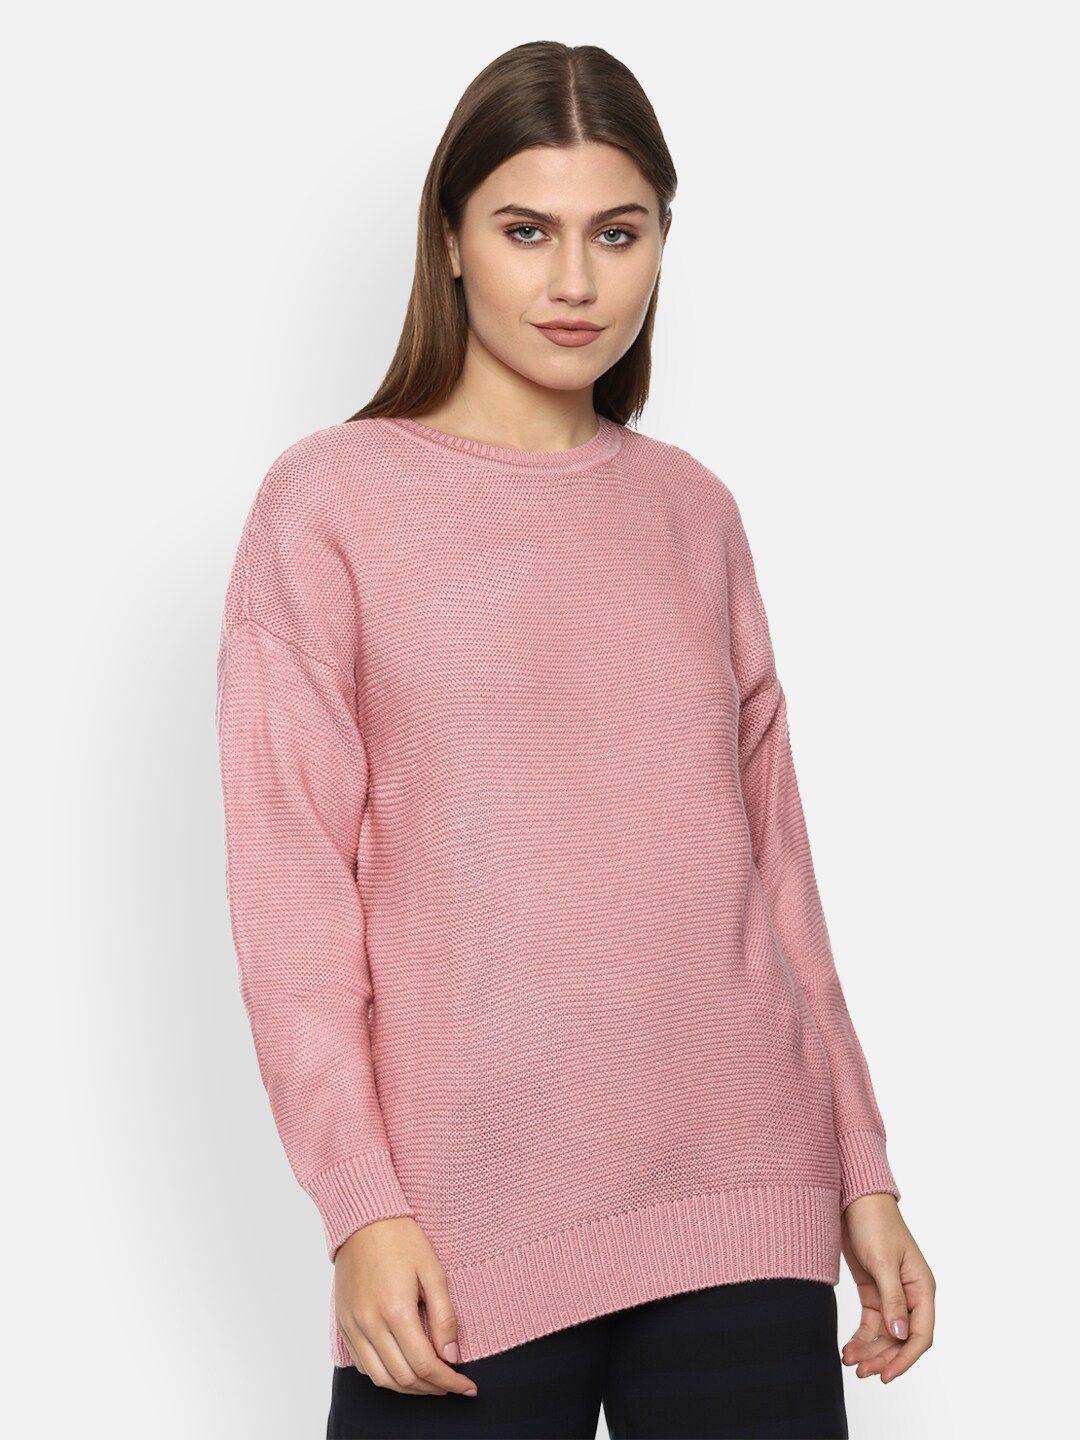 Van Heusen Woman Pink Pullover